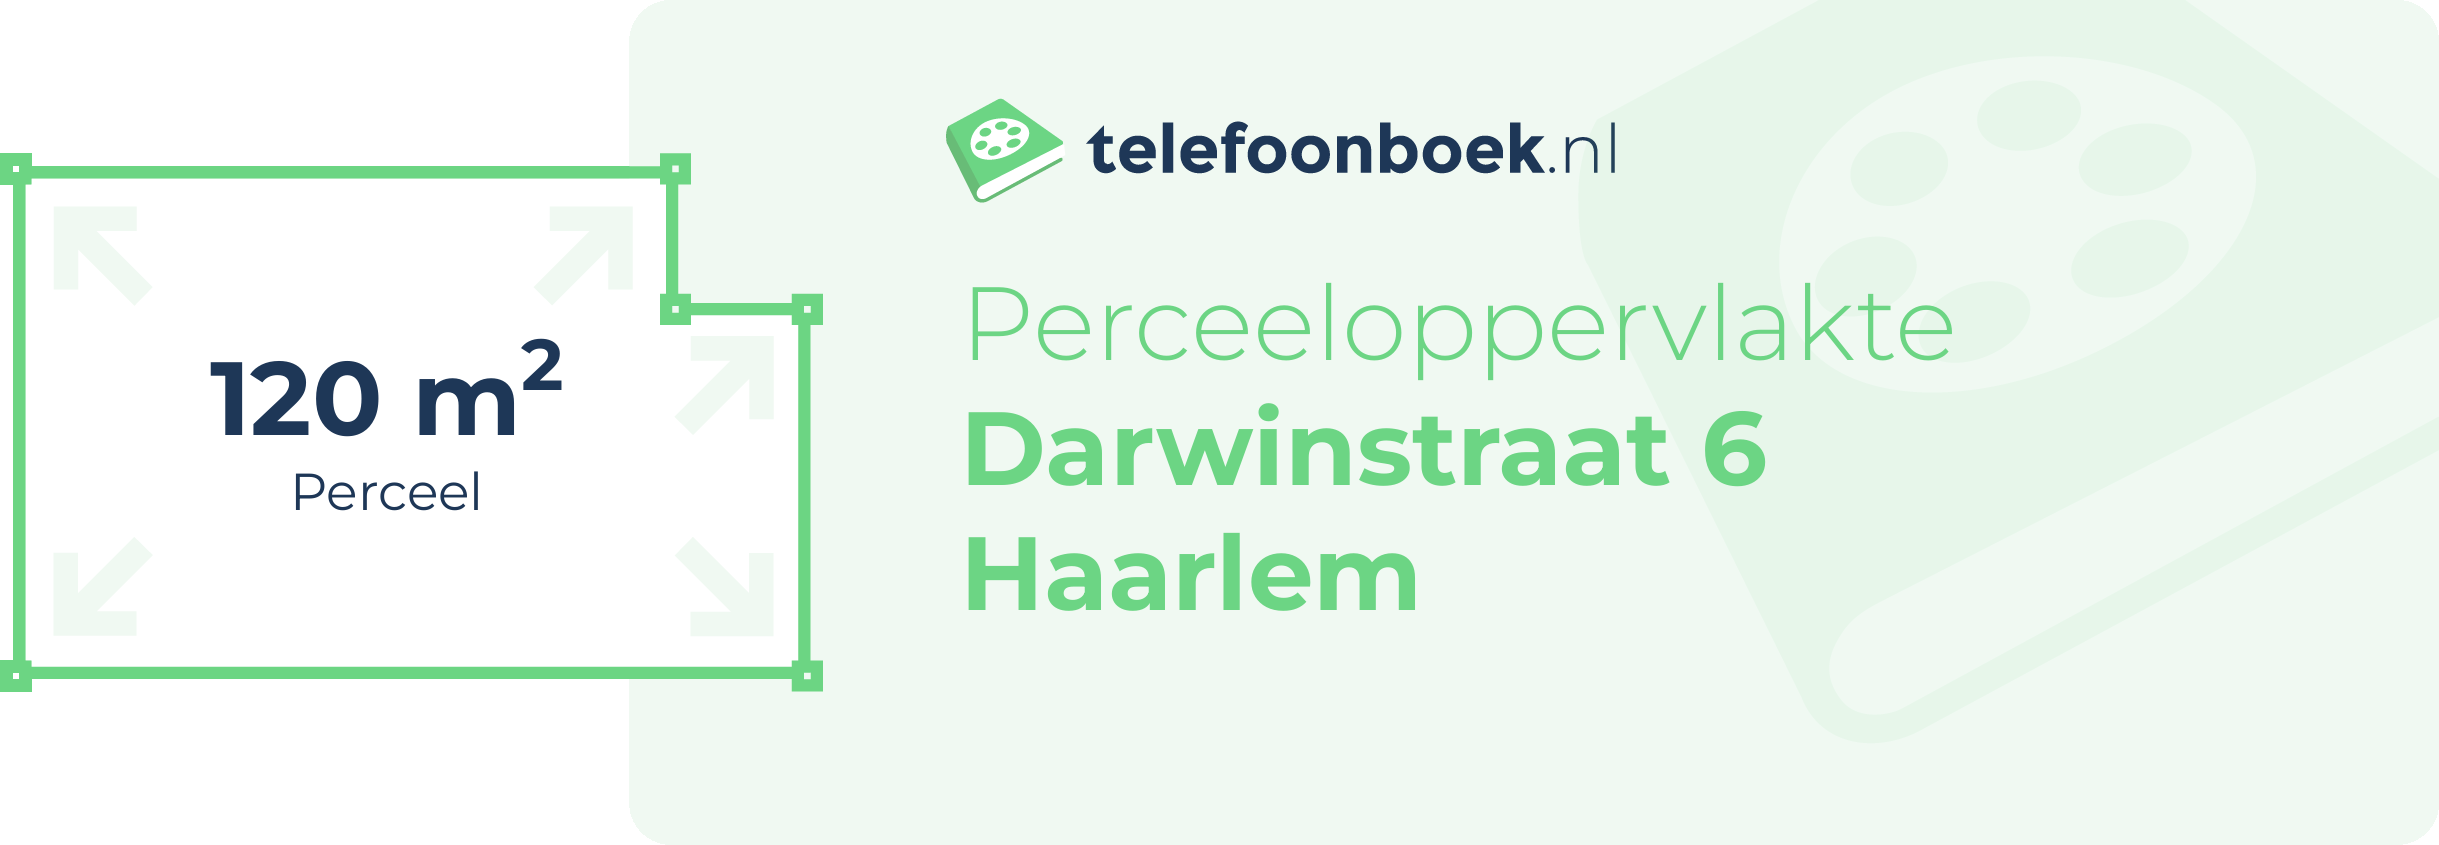 Perceeloppervlakte Darwinstraat 6 Haarlem